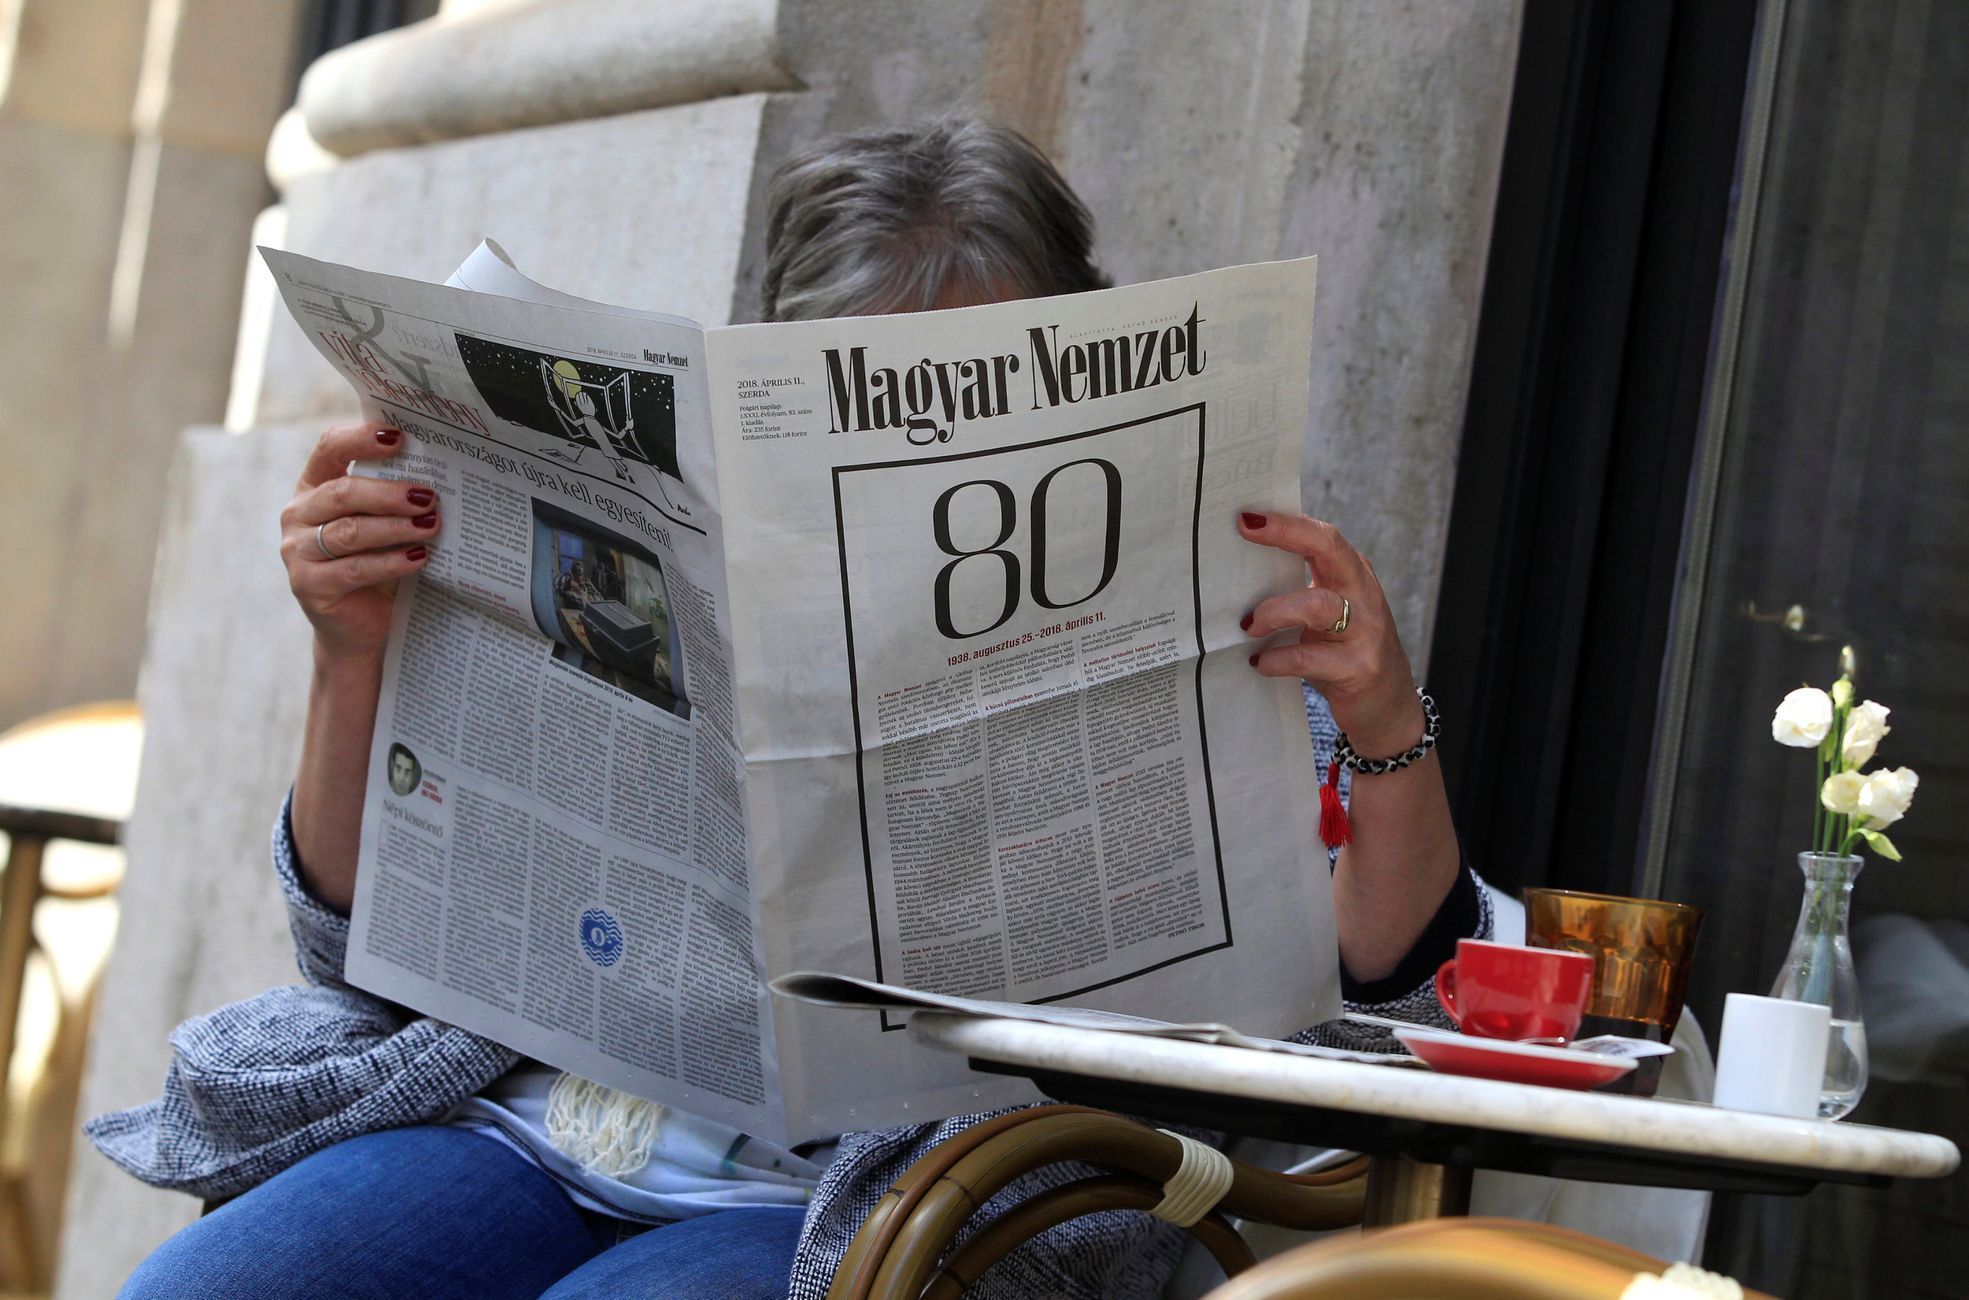 Nejvýznamnější opoziční maďarský deník Magyar Nemzet přestal vycházet po 80 letech jen několik dní po volebním vítězství Viktora Orbána.